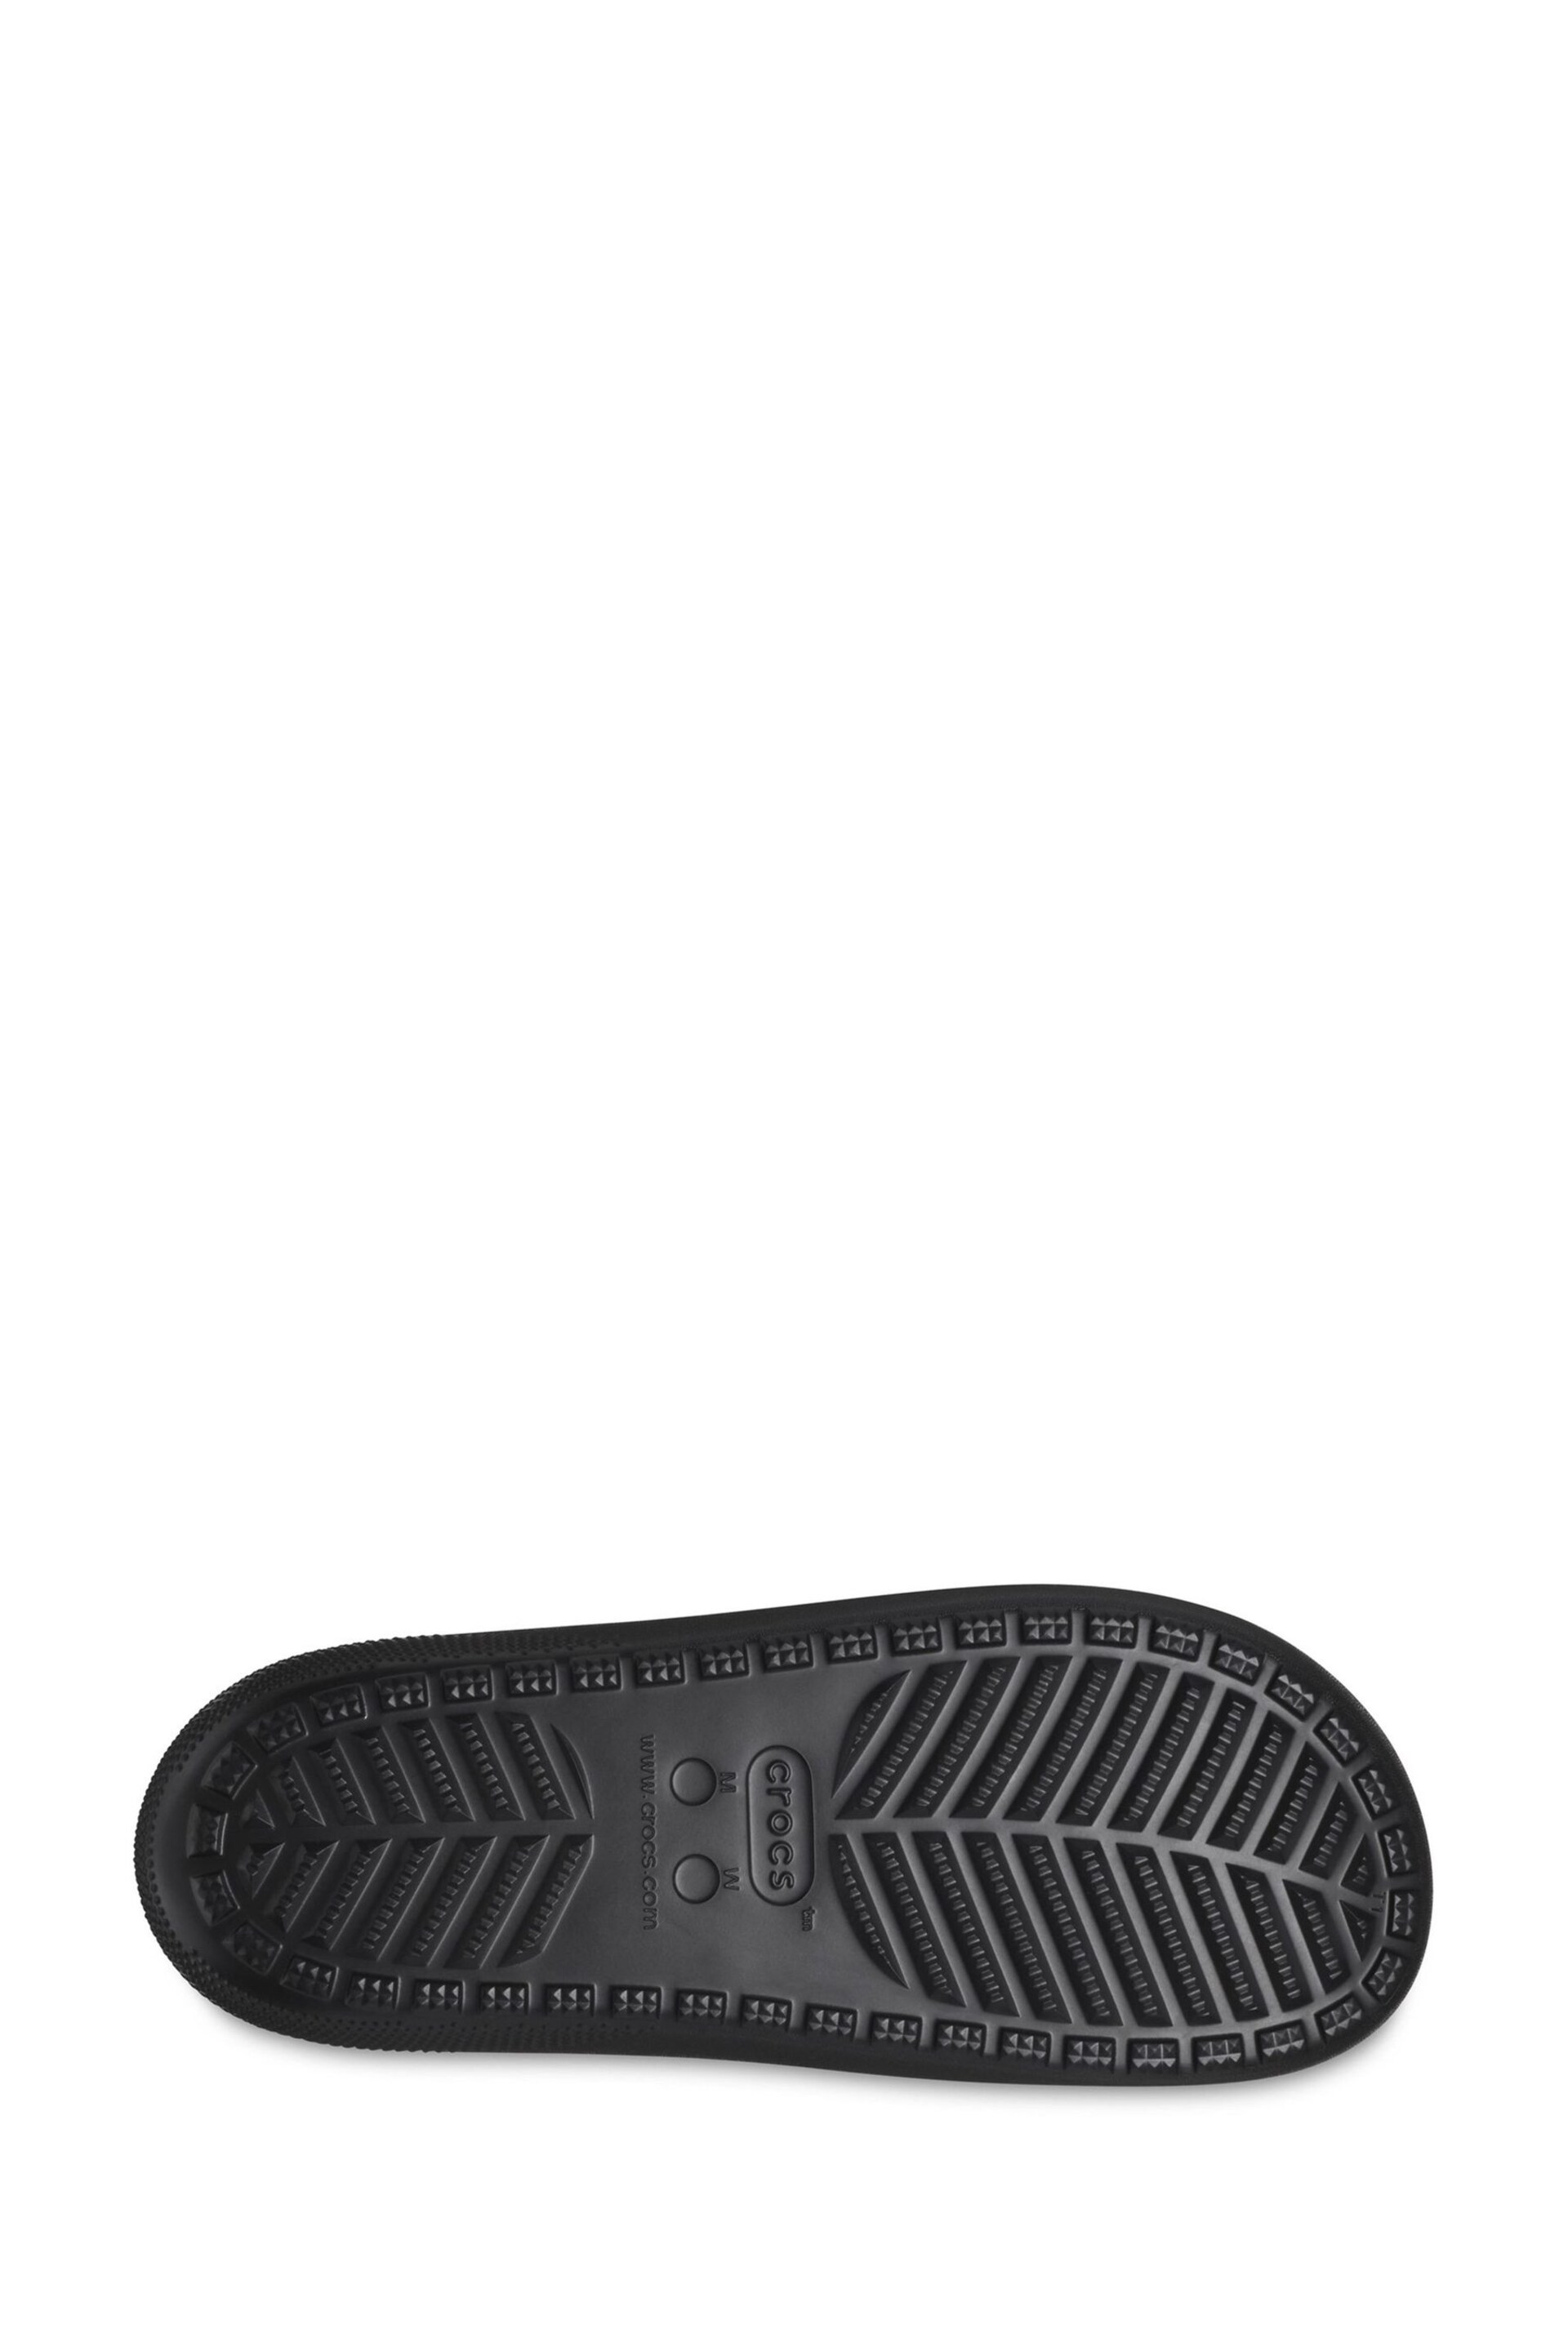 Crocs Classic Unisex Sandals - Image 4 of 6